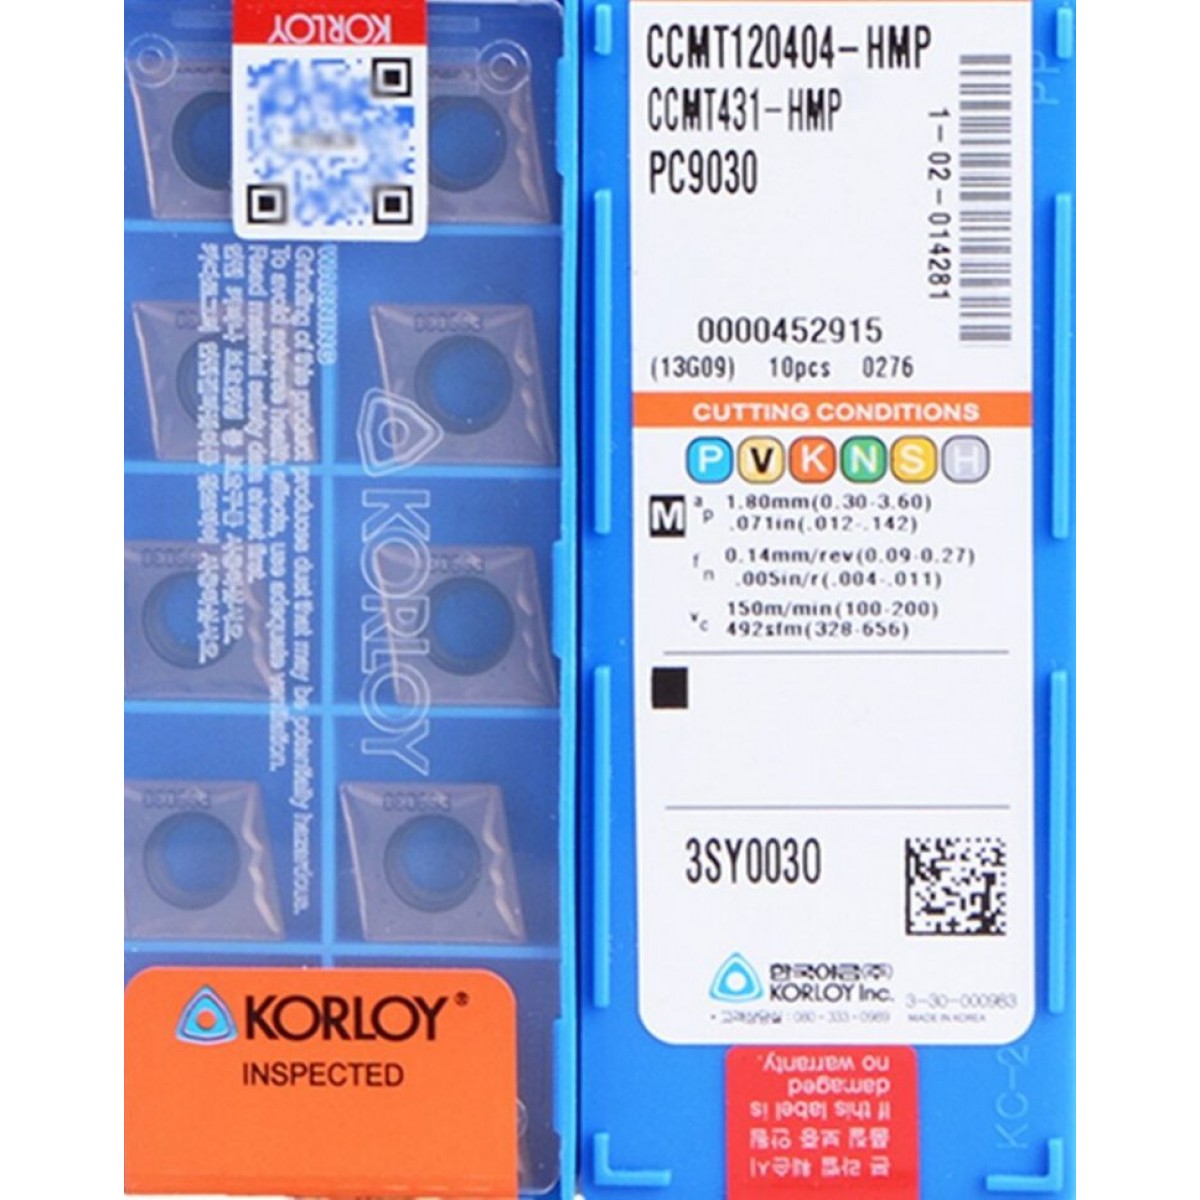 KORLOY - CCMT 120404-HMP PC9030